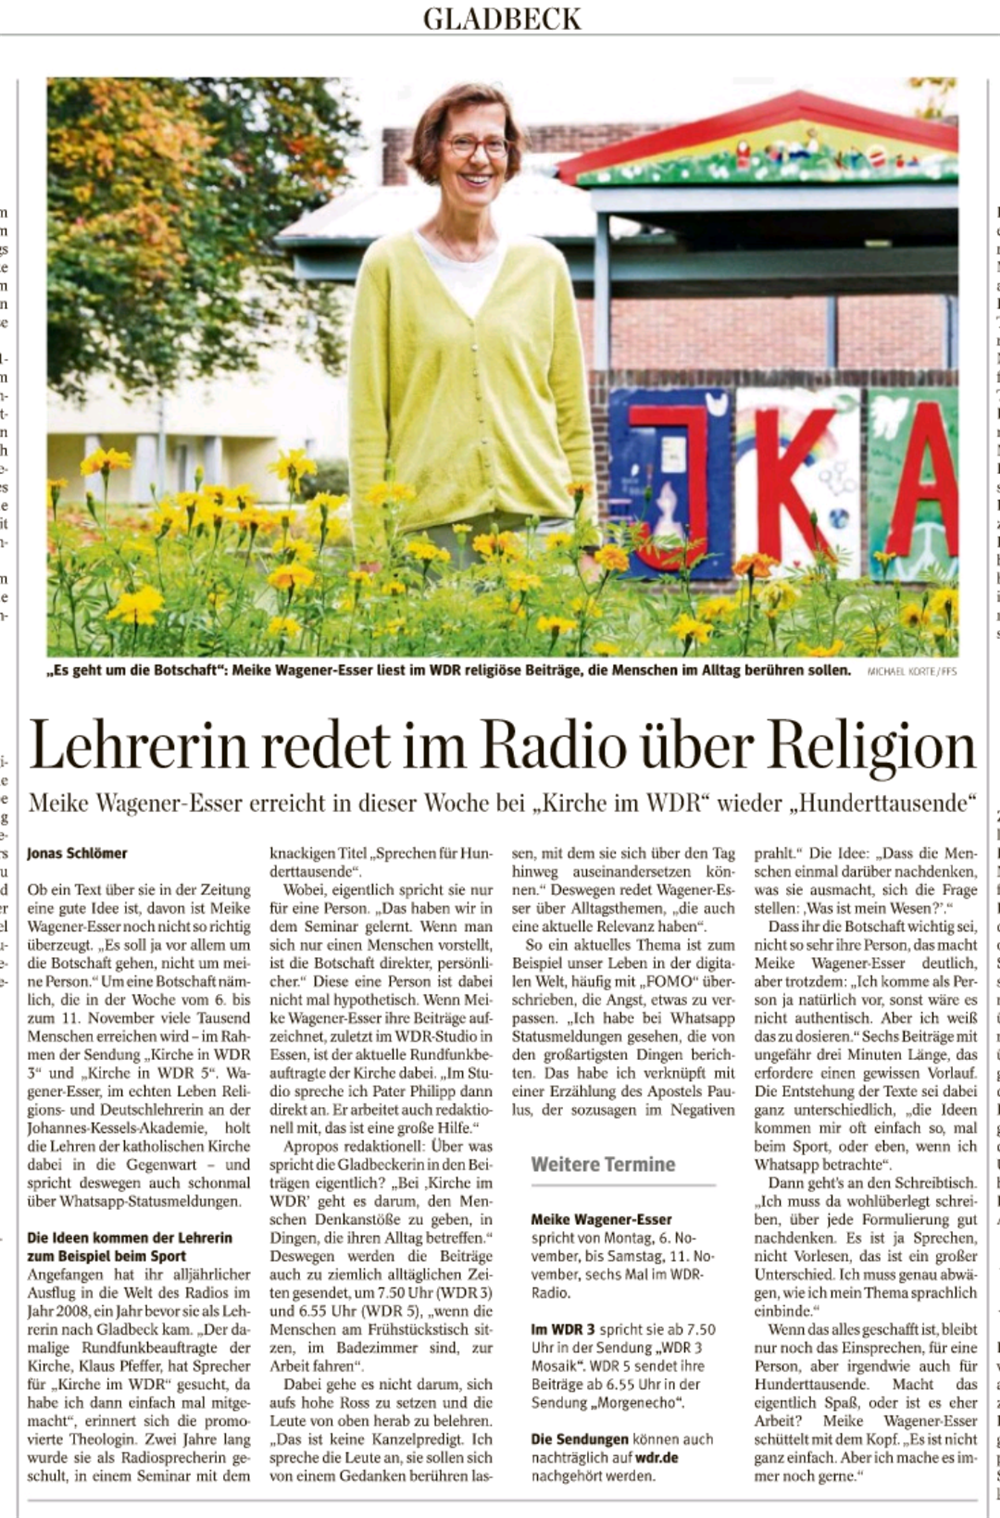 JKA Lehrkraft gibt Radio Impulse bei Kirche in WDR 3 / 5